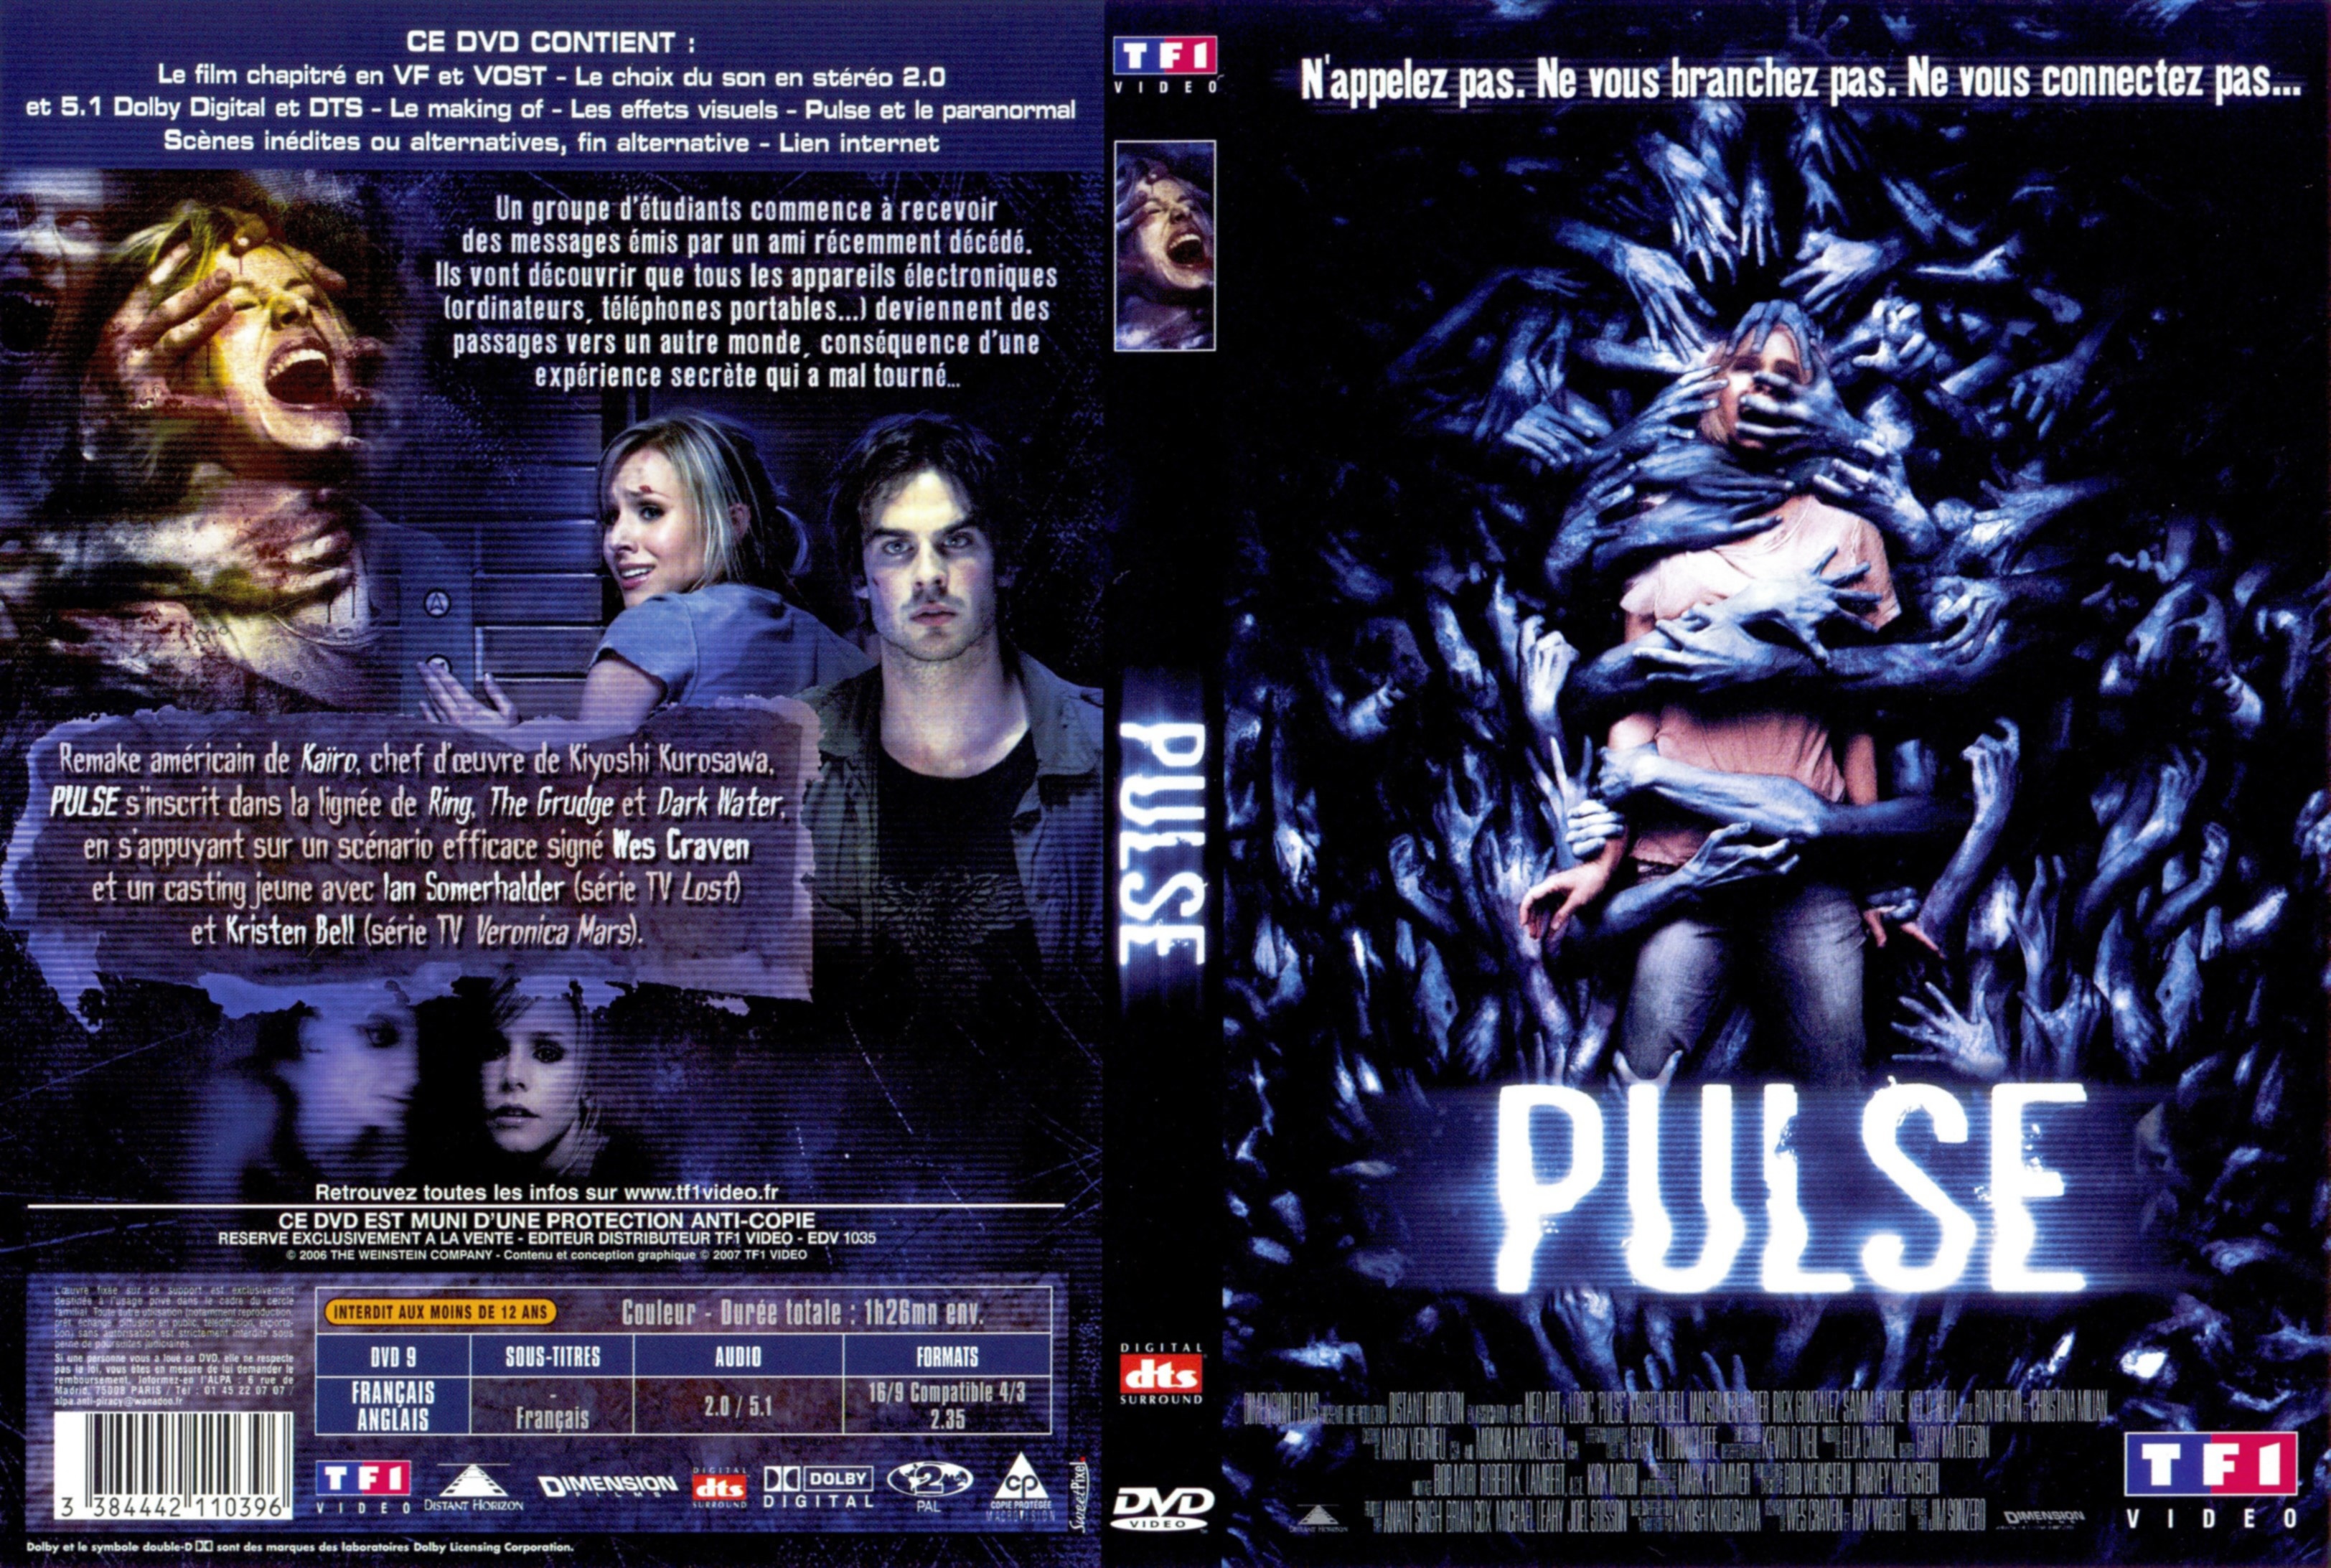 Jaquette DVD Pulse (2006) v3